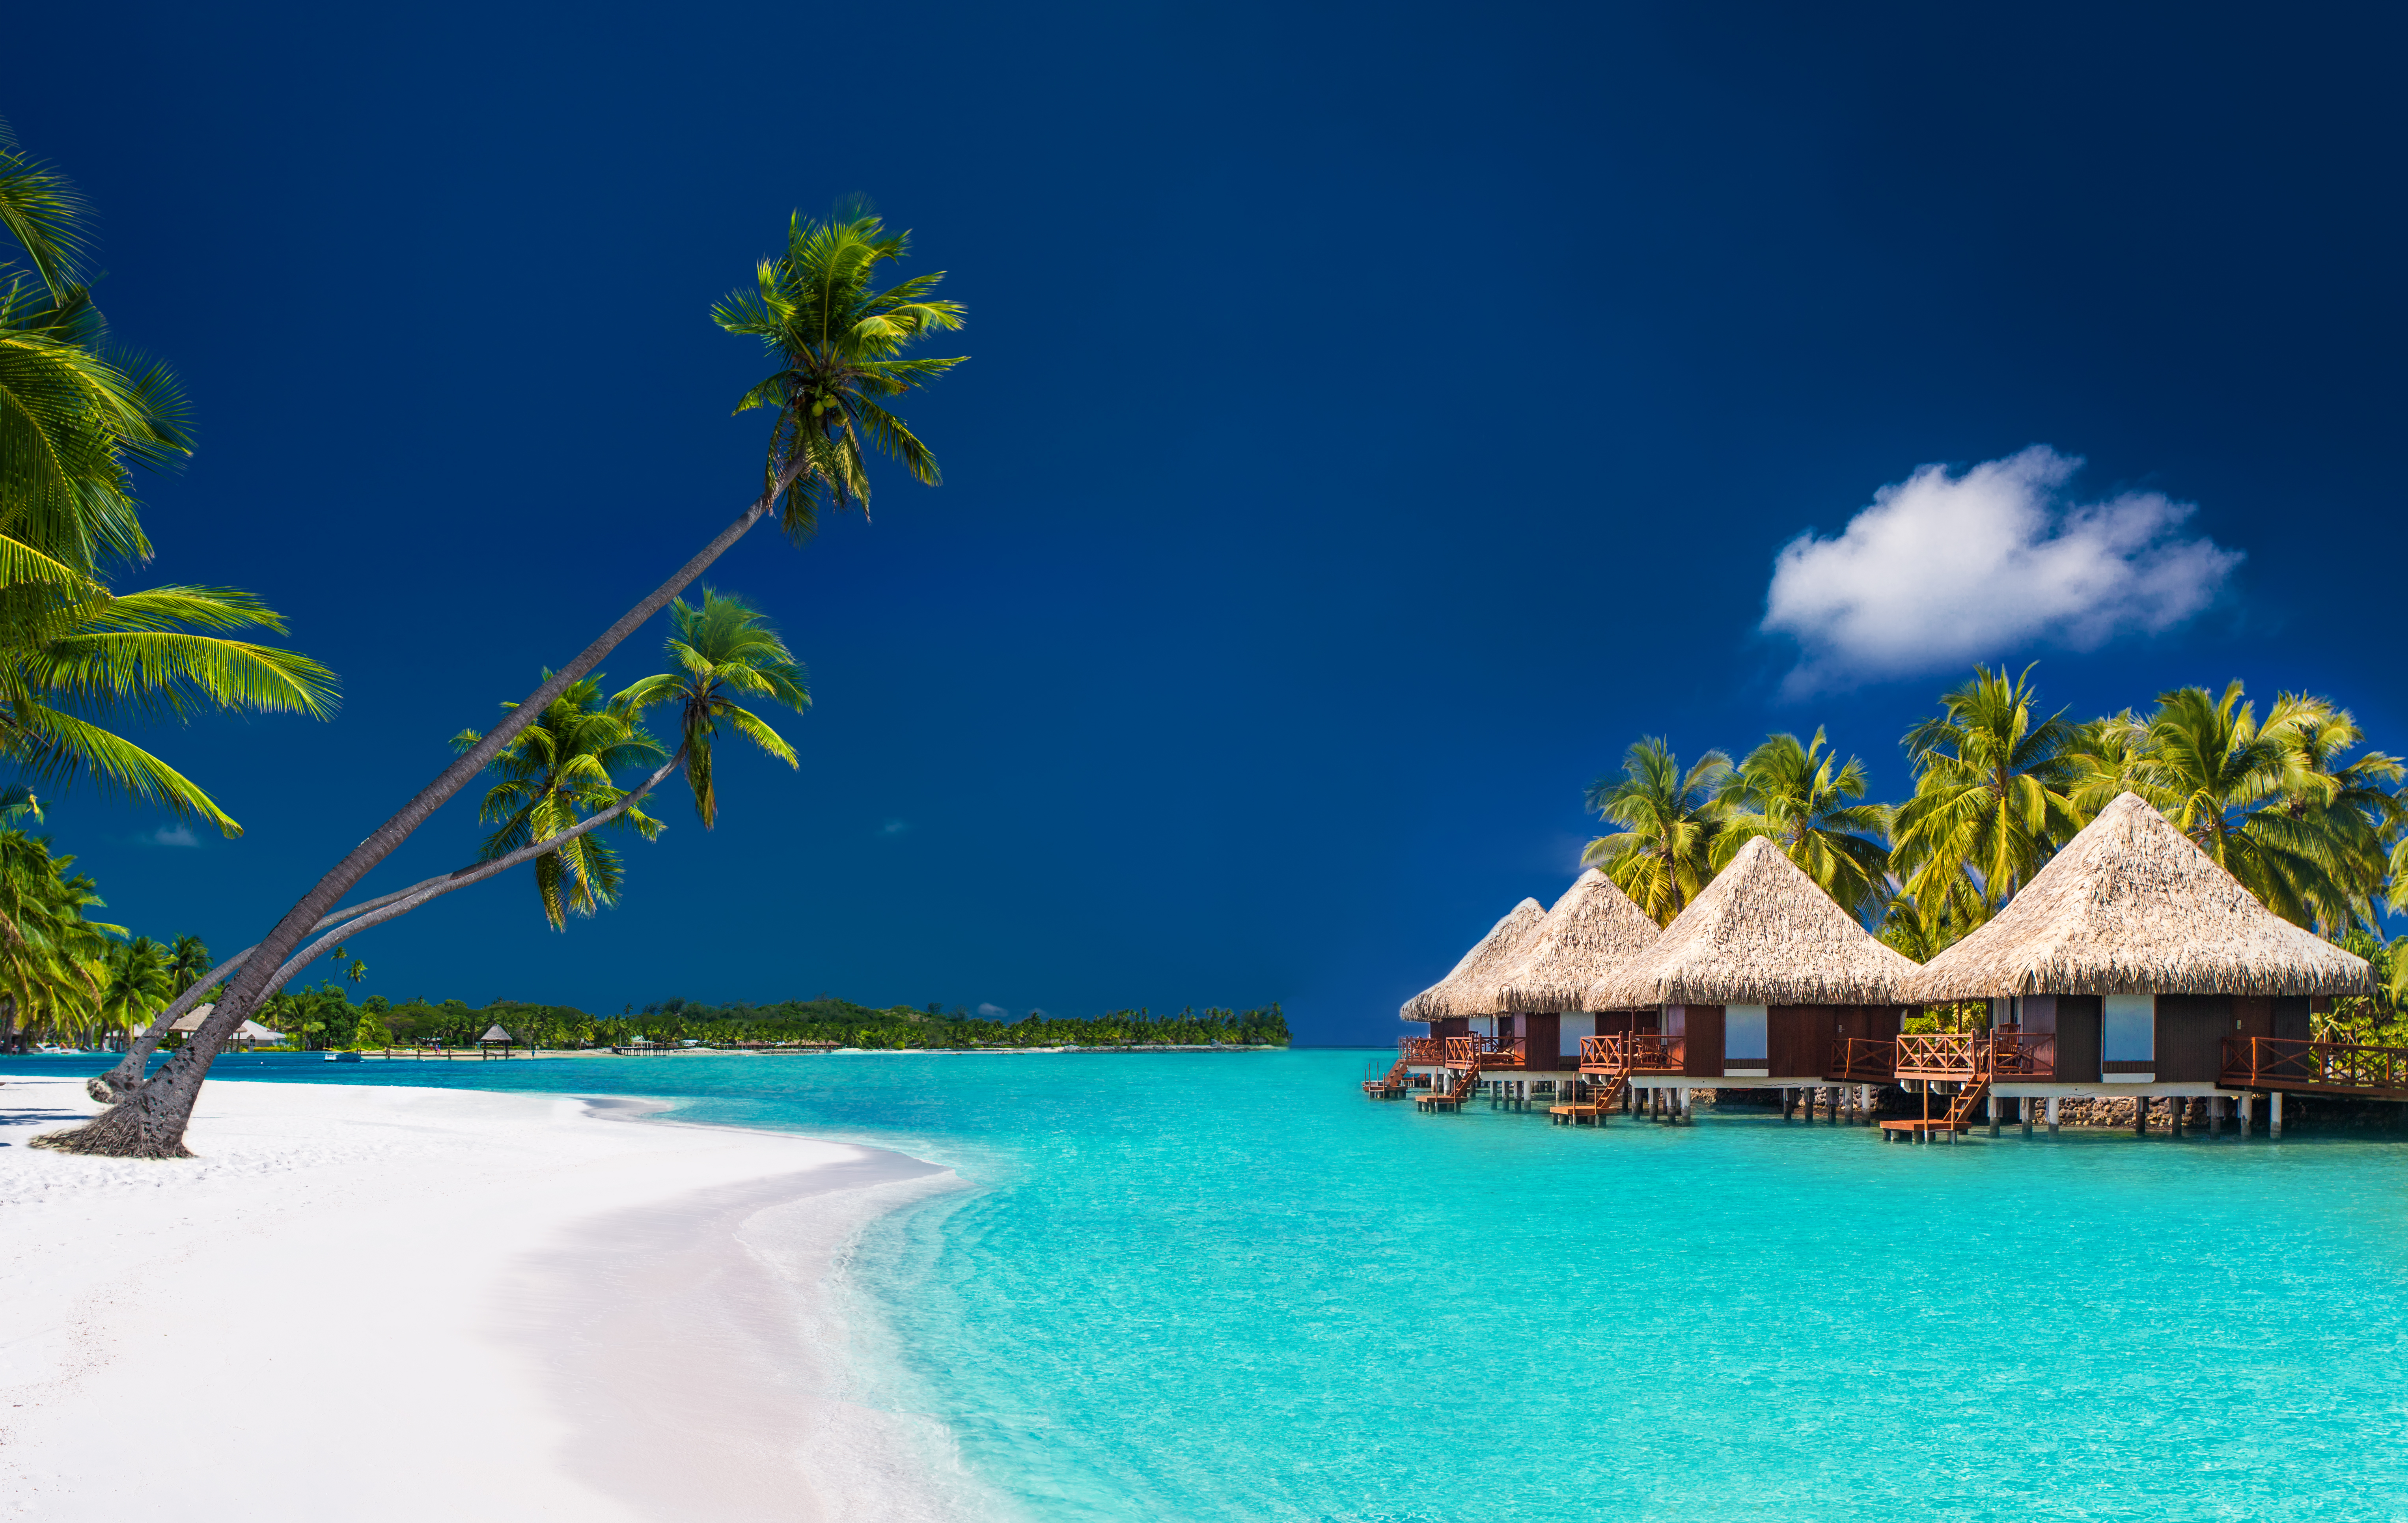 Villas by the beach in Bora Bora | Source: Shutterstock